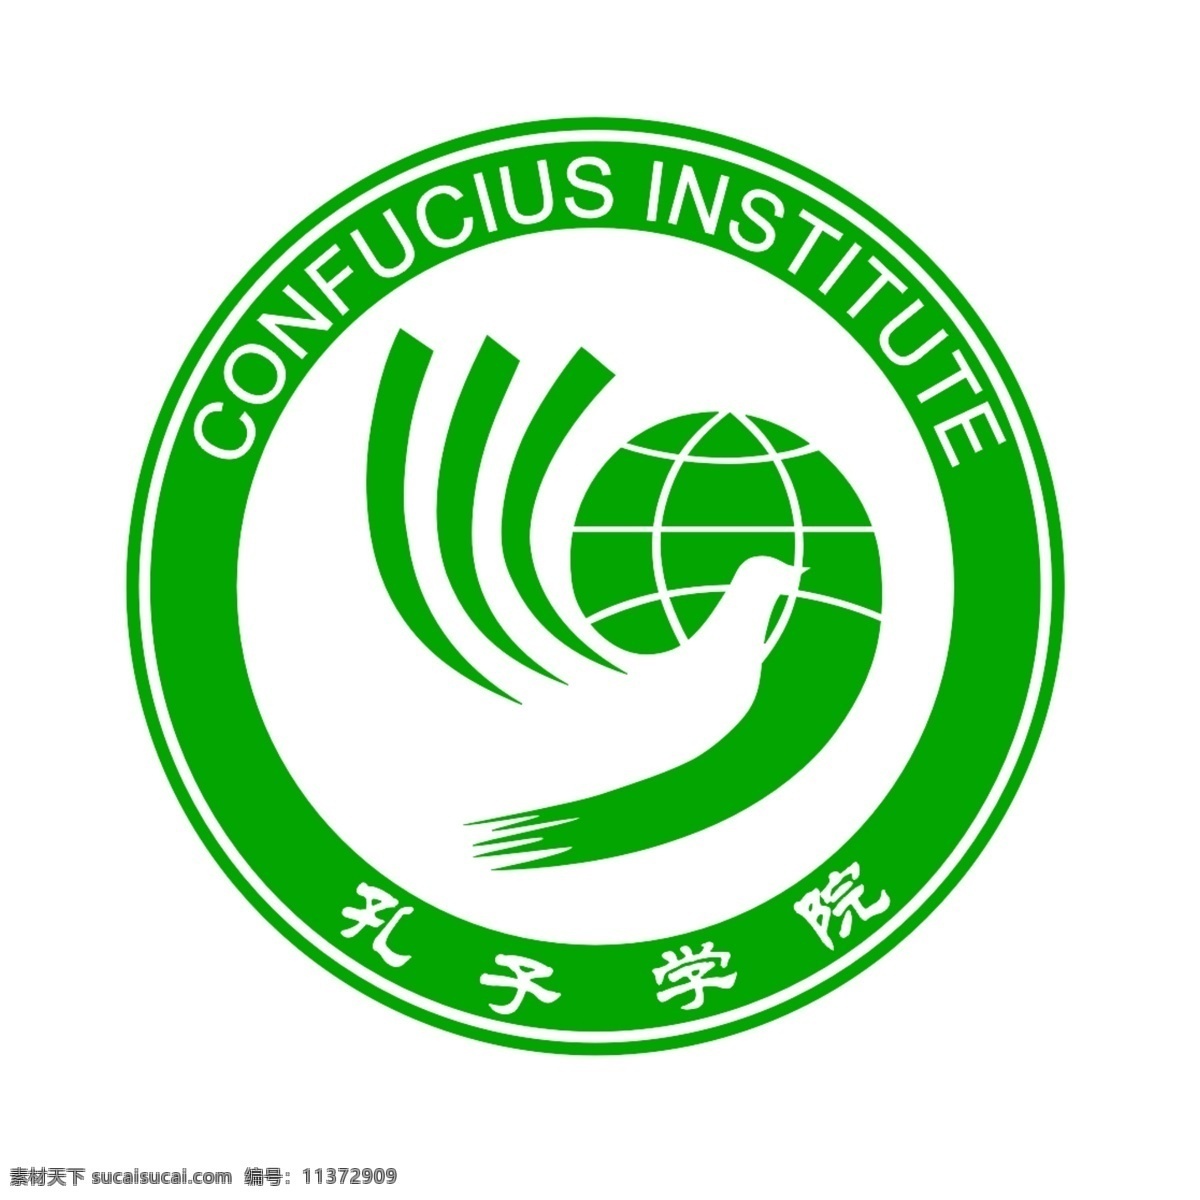 孔子学院 标志 logo 源文件